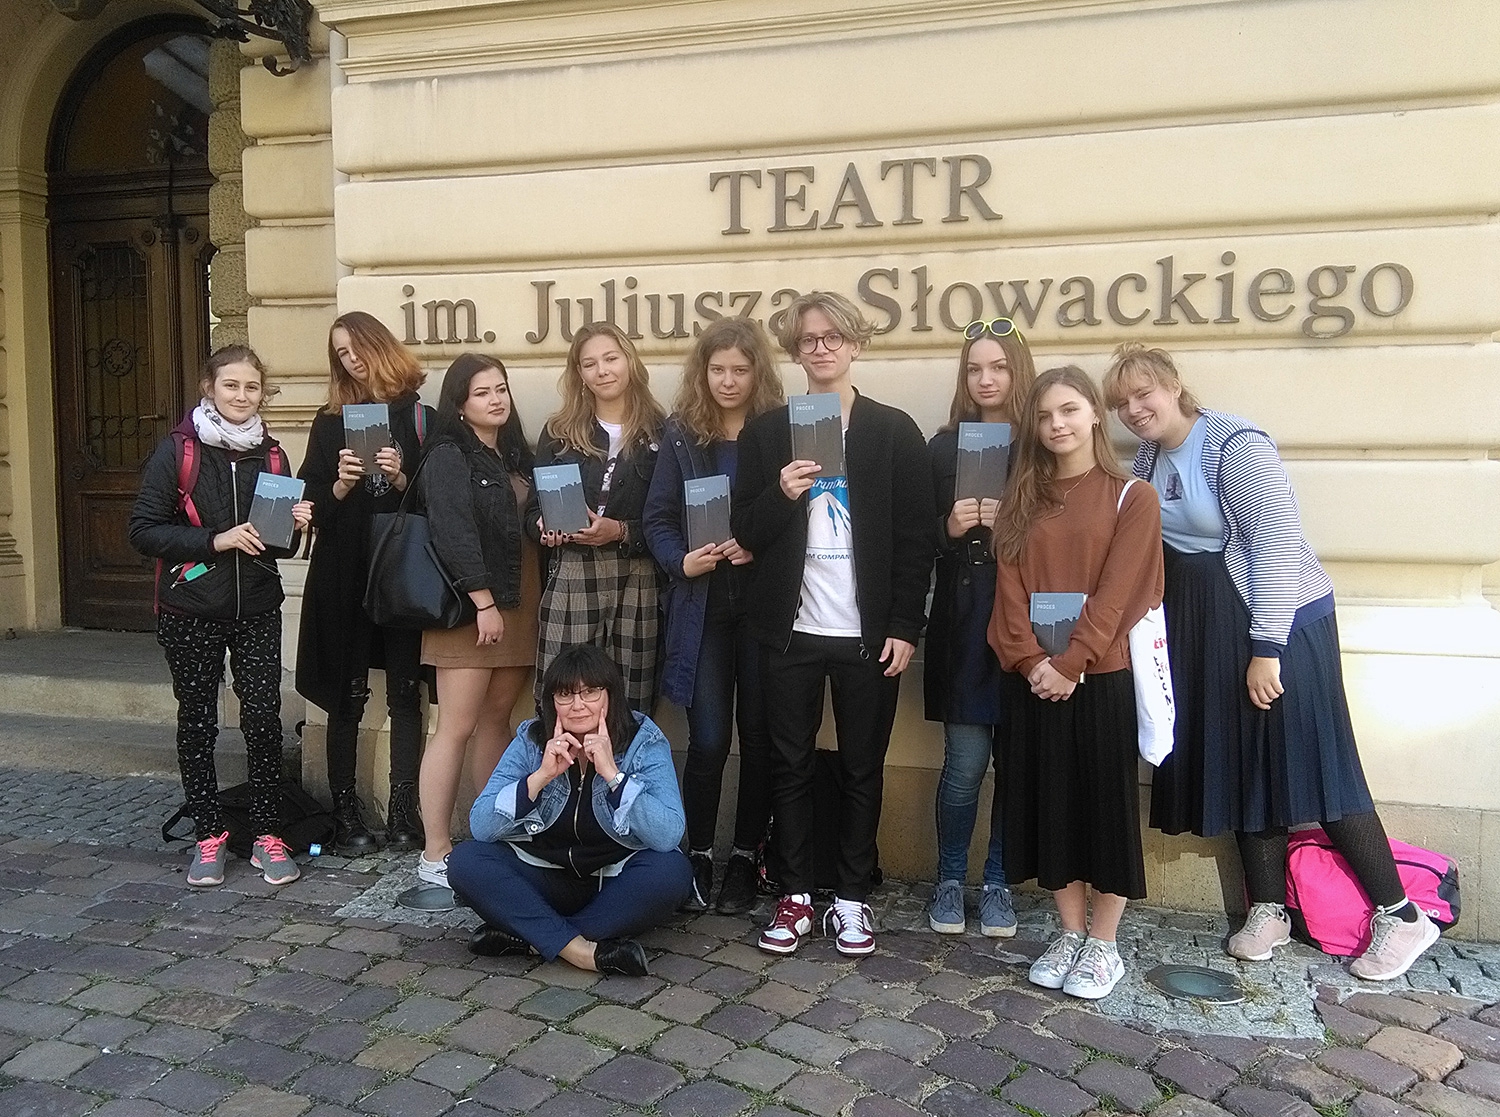 Podjazd przed wejściem głównym do Teatru im. J. Słowackiego. Grupa młodzieży stoi. Większość trzyma egzemplarze "Procesu" Franza Kafki. Przed grupą młodzieży kuca nauczycielka.